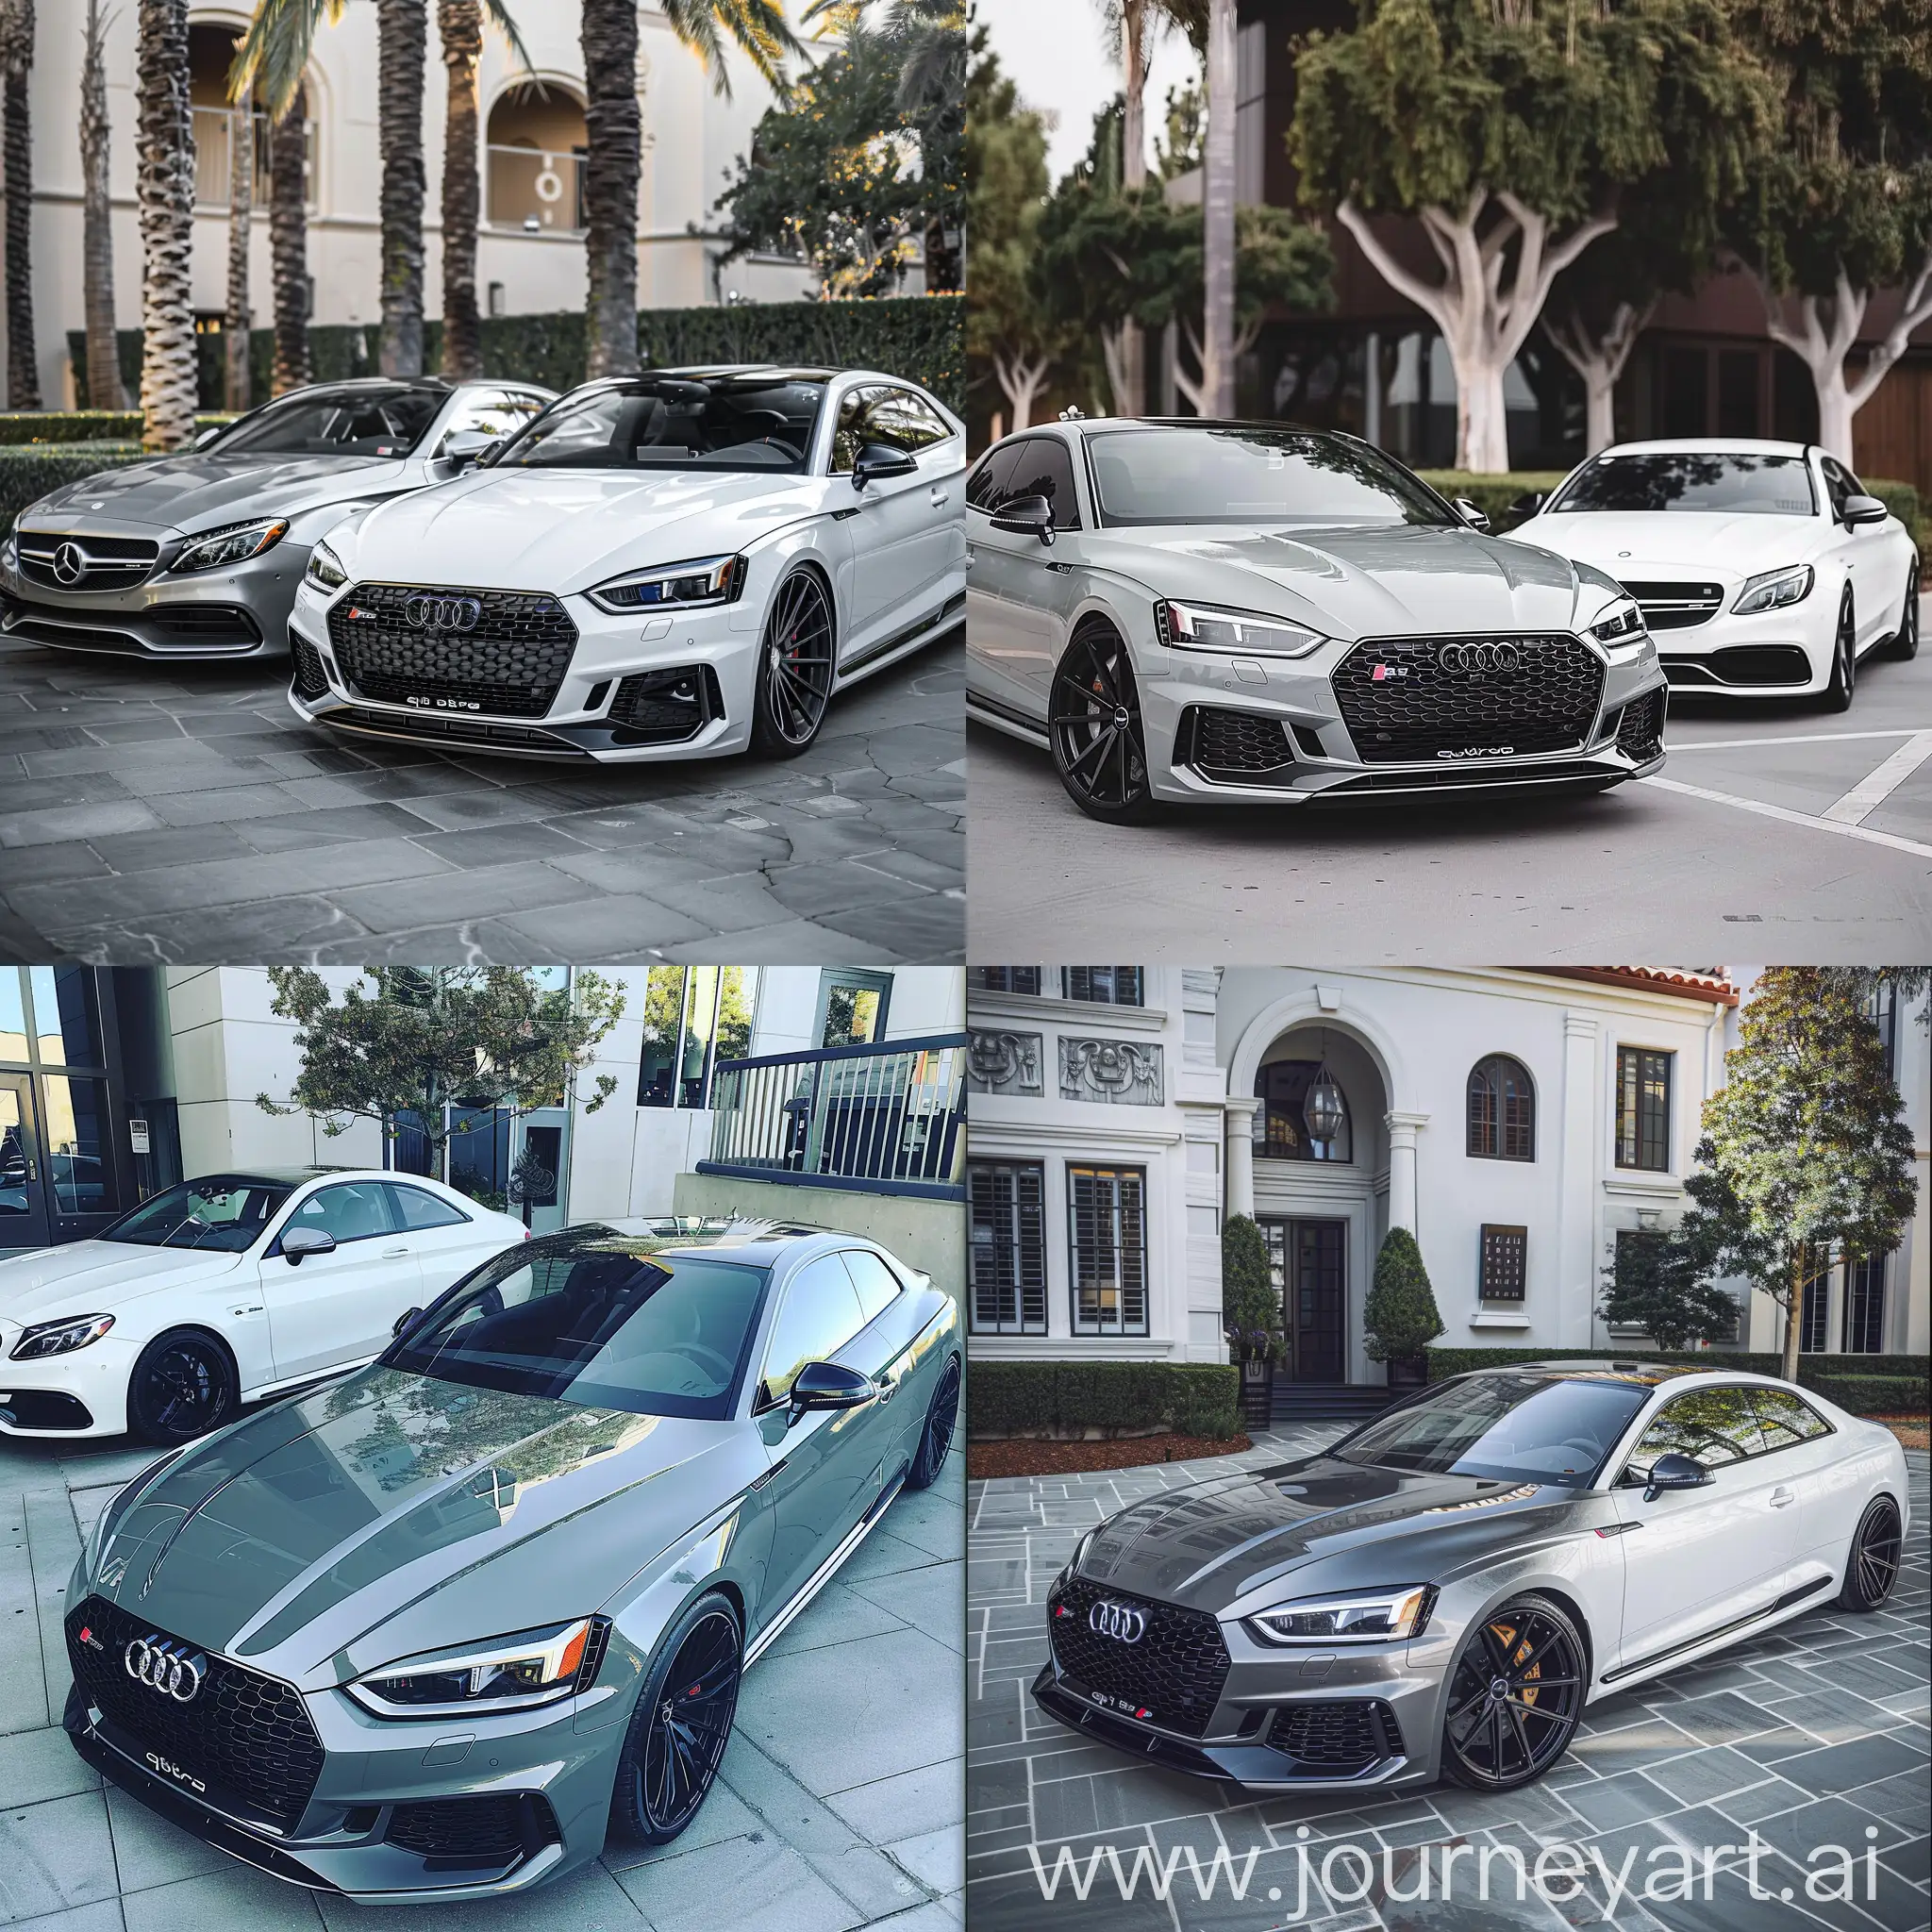 Instagram style van audi rs5 2018 in grijs zwarte abt velgen gespot naast een Mercedes c63 2018 in wit naast elkaar wallpaper scherp mooi